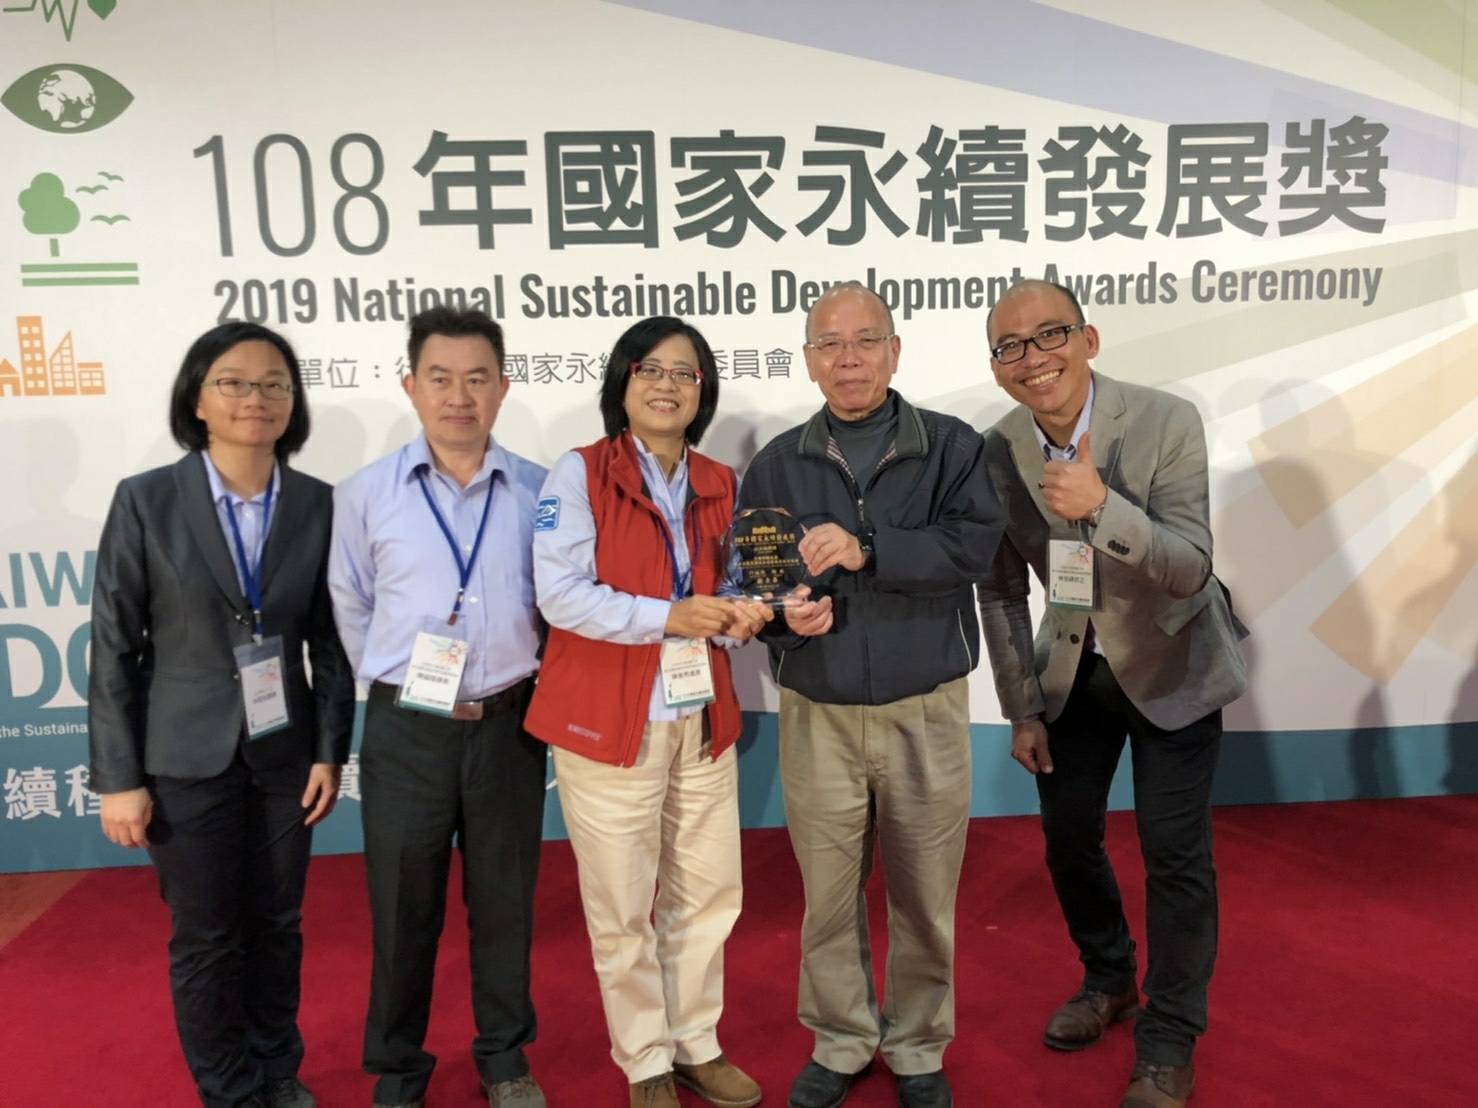 エグゼクティブユアンチャンジンセン（右から2番目）のエグゼクティブメンバーが、東北および宜蘭管理事務所のディレクターであるChen Meixiu（中央）に賞を贈呈しました。